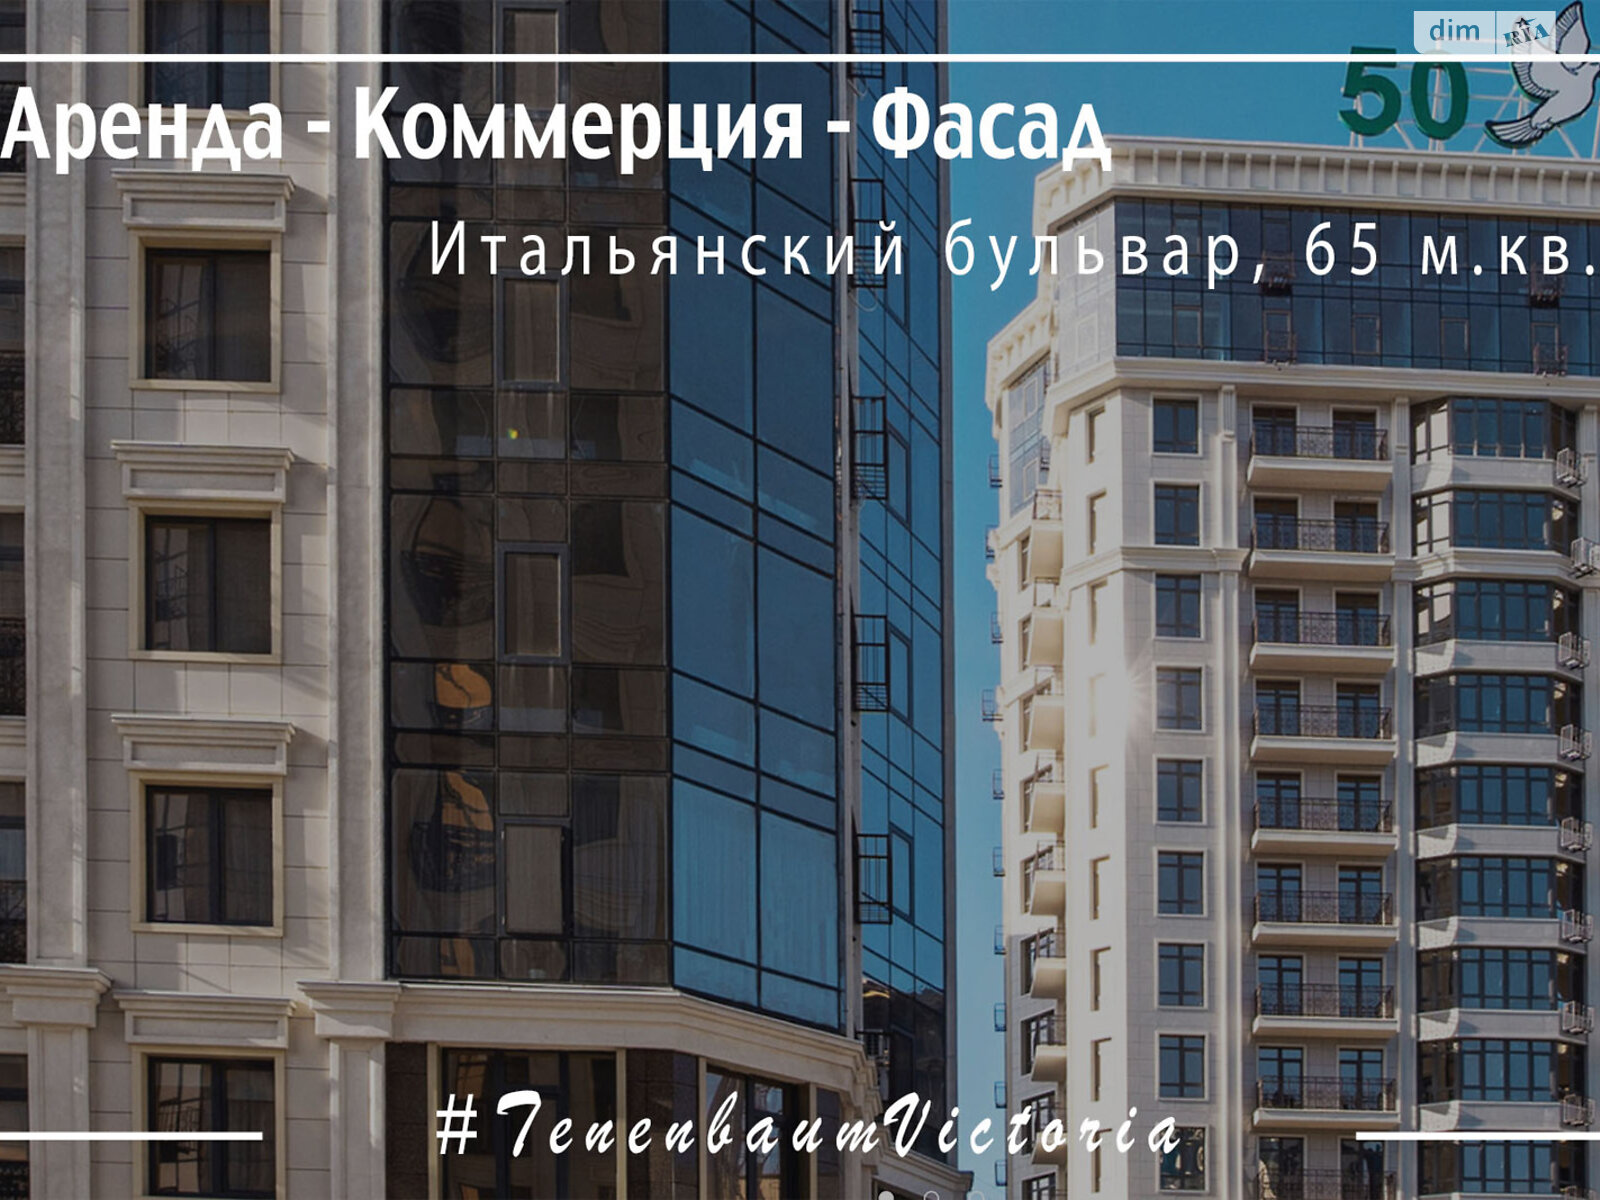 Аренда офисного помещения в Одессе, Итальянский бульвар 1А, помещений - 3, этаж - 1 фото 1